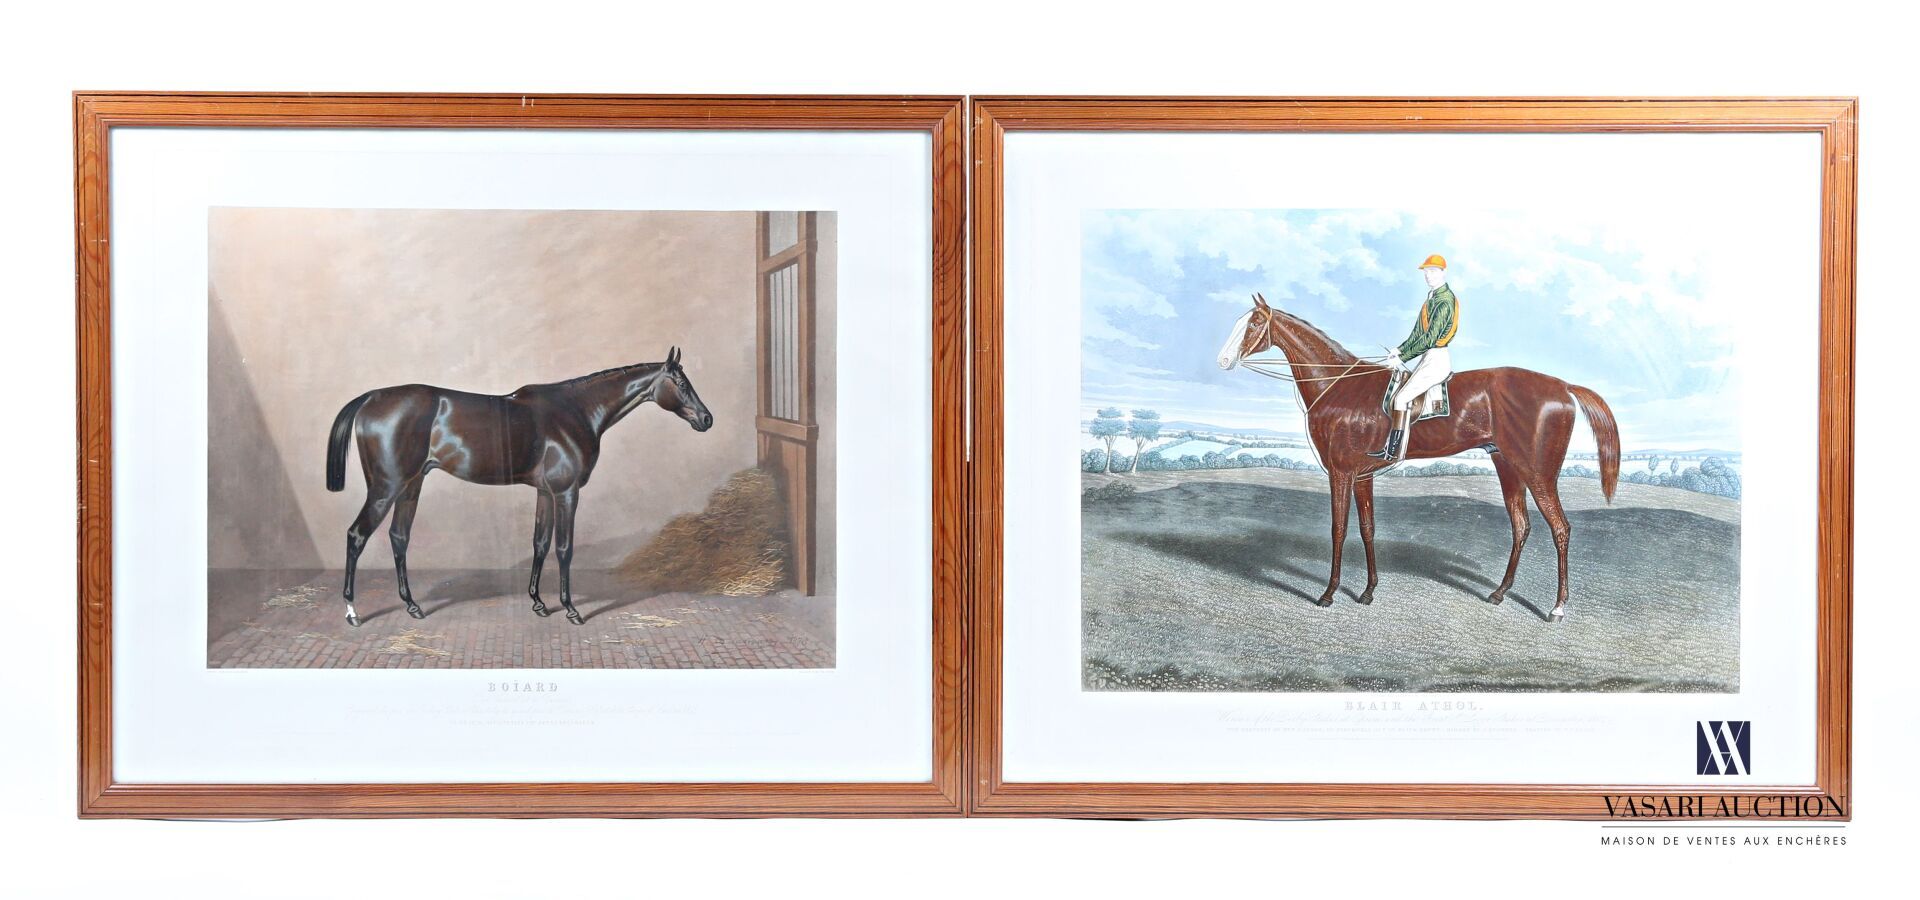 Null 一套两幅彩色版画，第一幅是在Hunt & Son之后表现布莱尔-阿瑟尔，第二幅是在Delamare之后表现博雅尔。

(左侧空白处有一处破损)

66&hellip;